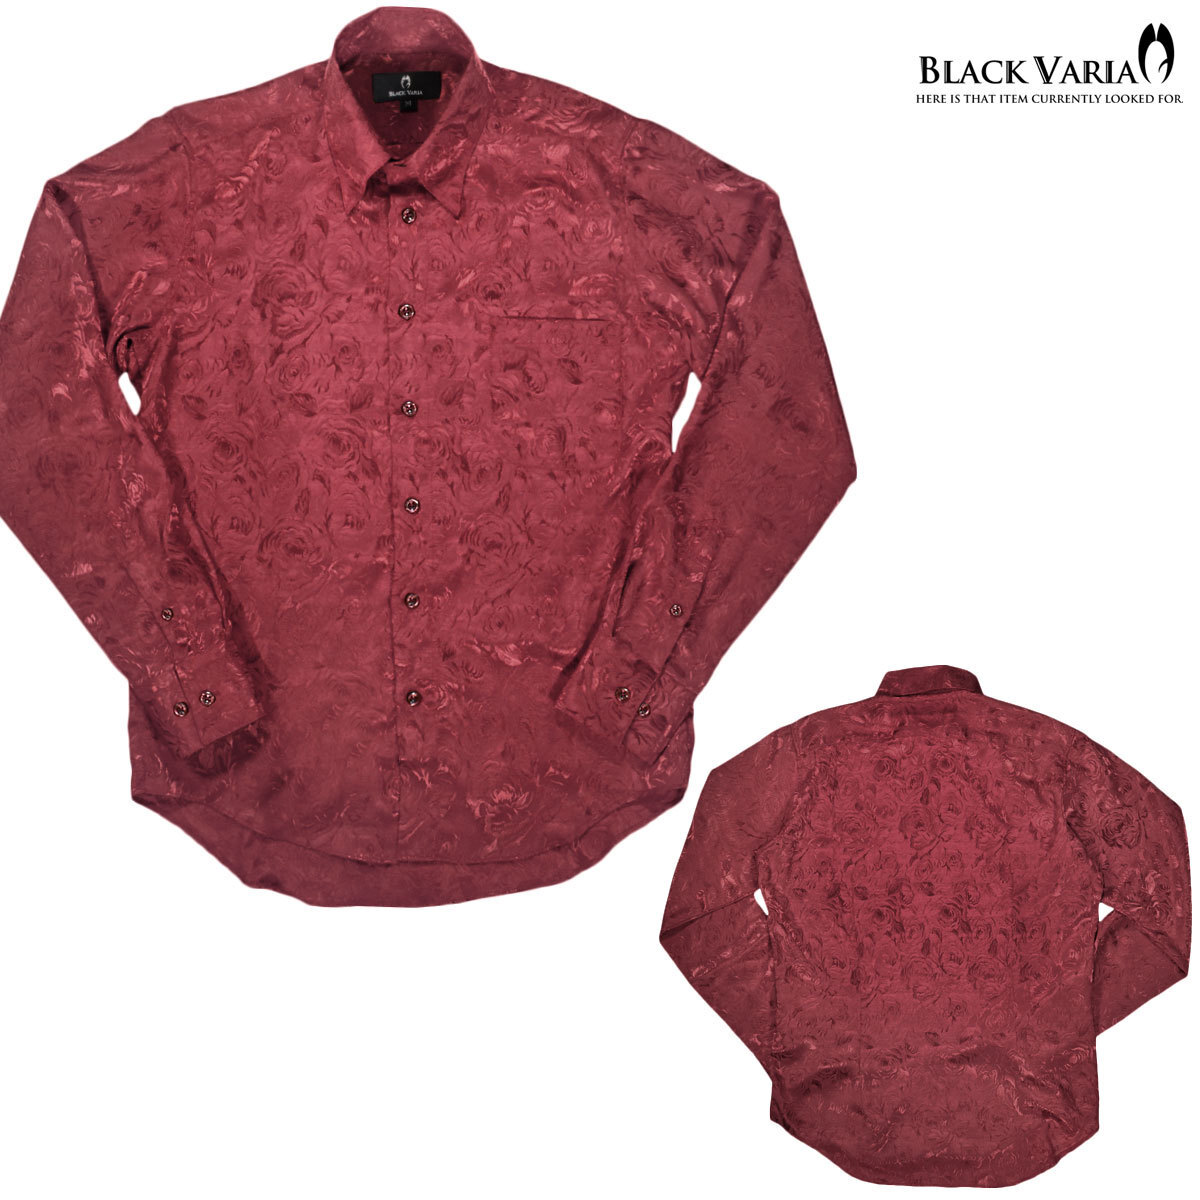 161222-win BLACK VARIA ドゥエボットーニ 光沢ローズ花柄 織柄 スナップダウン 長袖シャツ メンズ(ワインレッド赤) L パーティー_画像4